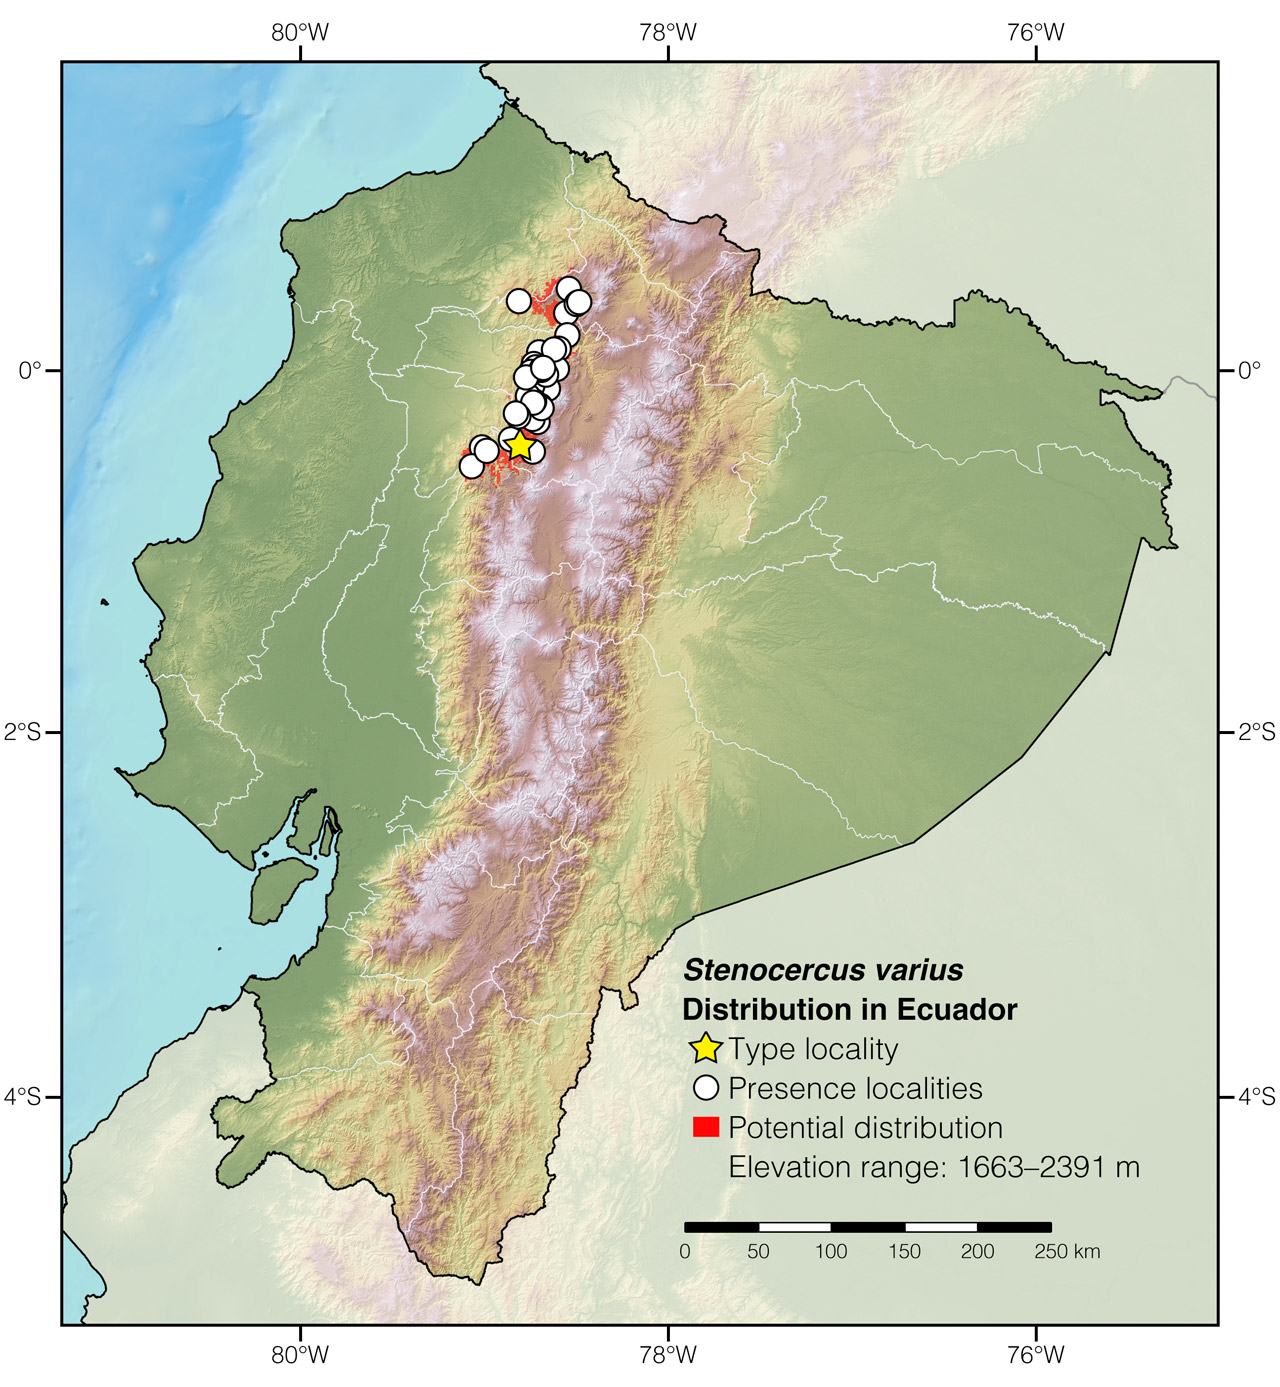 Distribution of Stenocercus varius in Ecuador